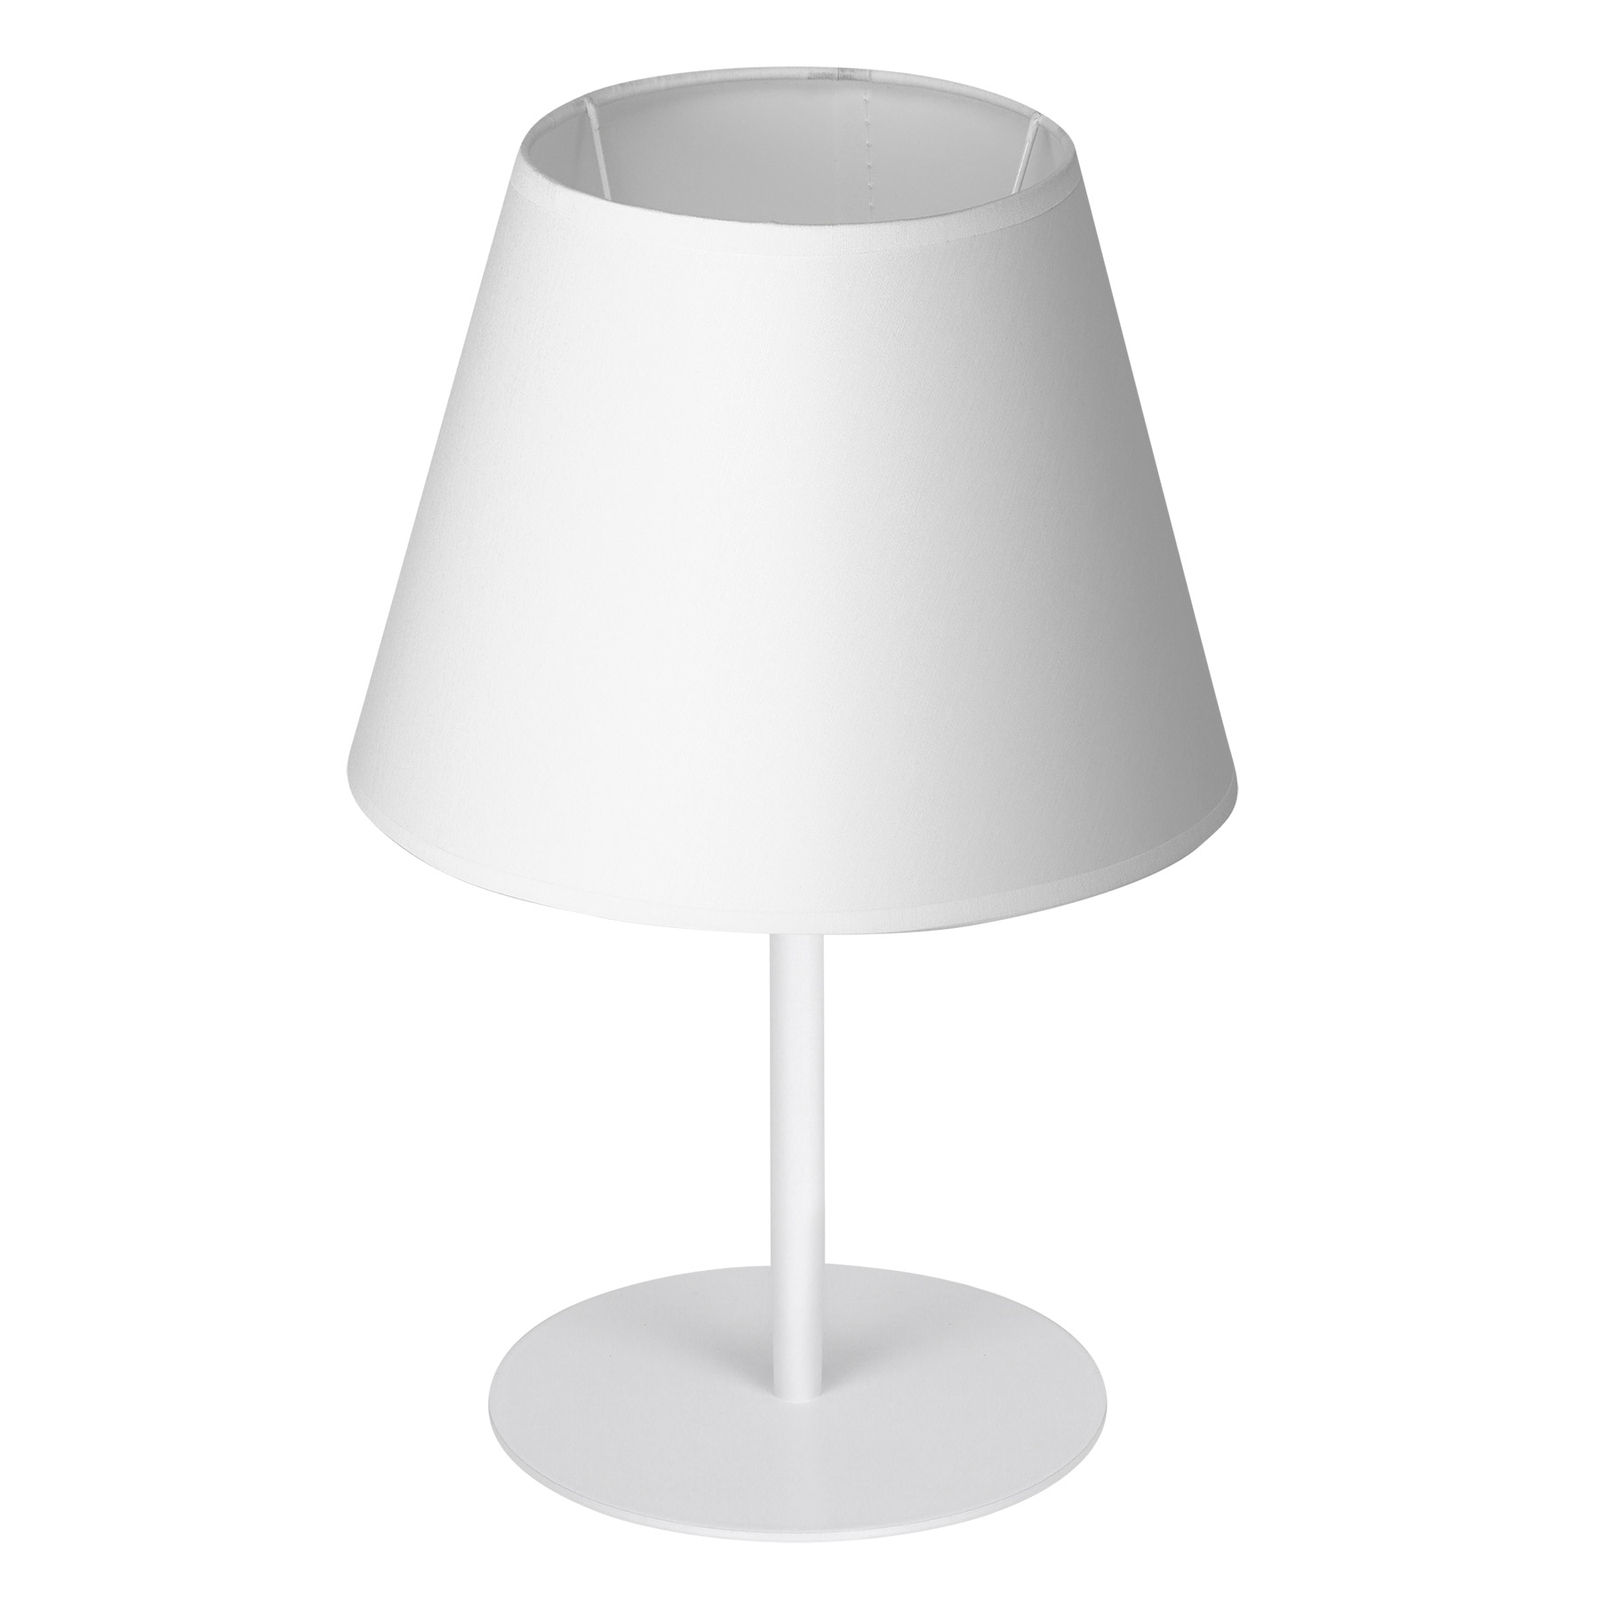 Lampa stołowa Soho, stożkowa wysokość 33 cm, biała